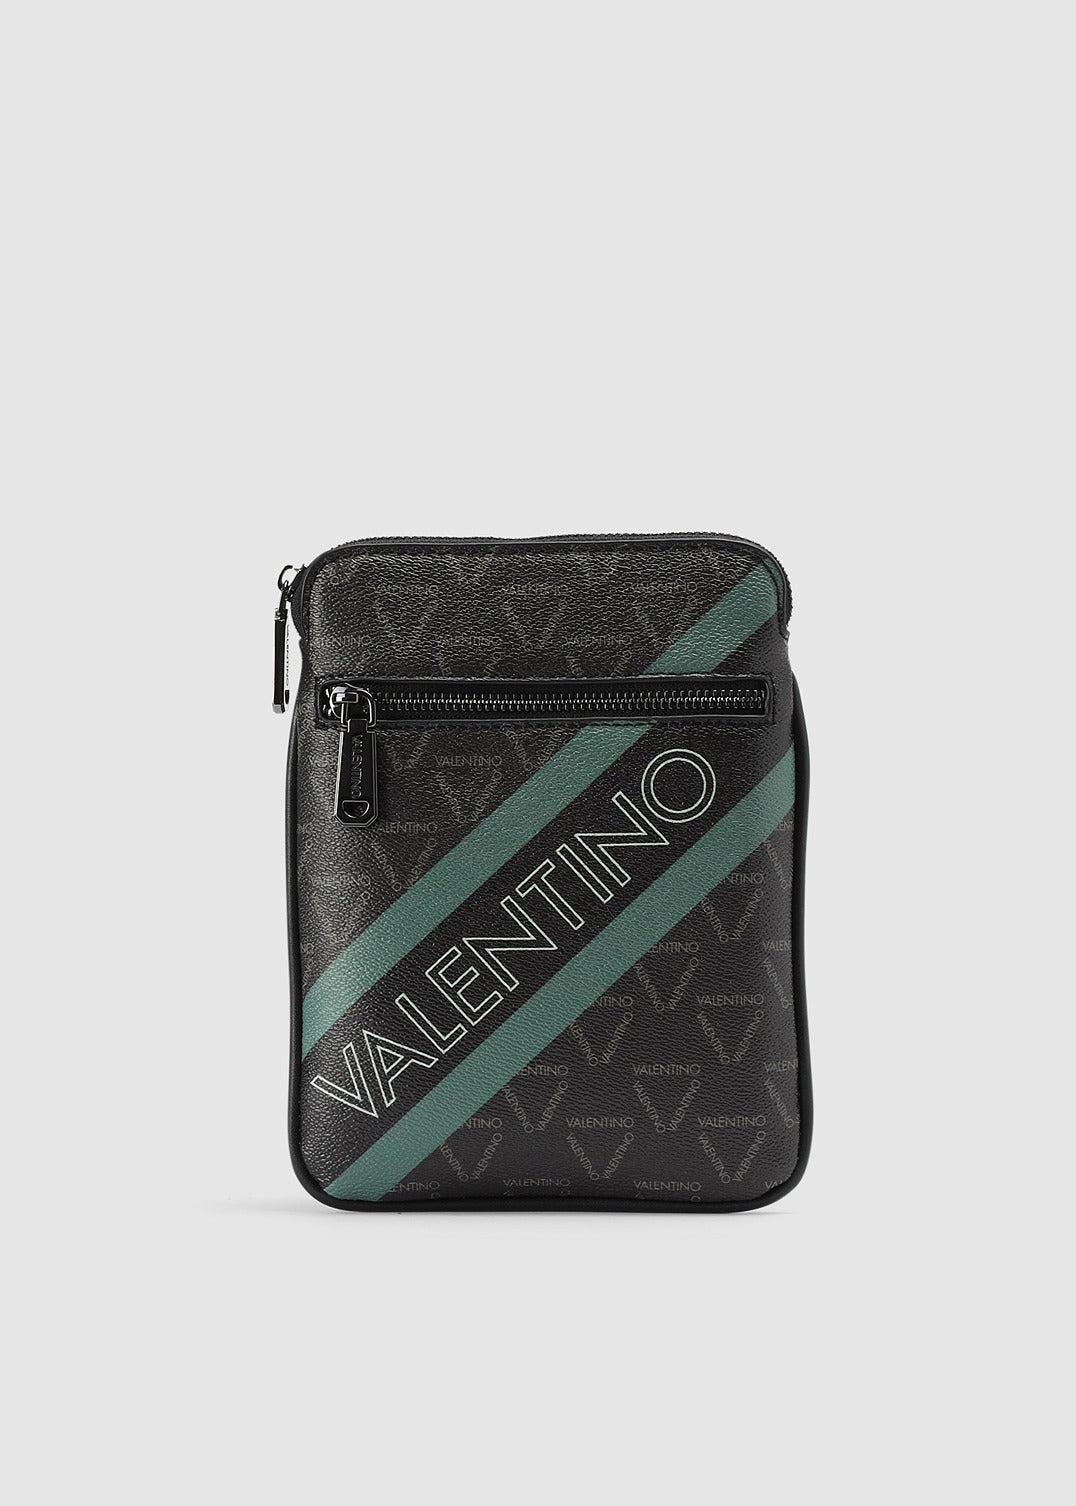 Valentino Bags Mens Aron Crossbody Bag In Nero/Militare